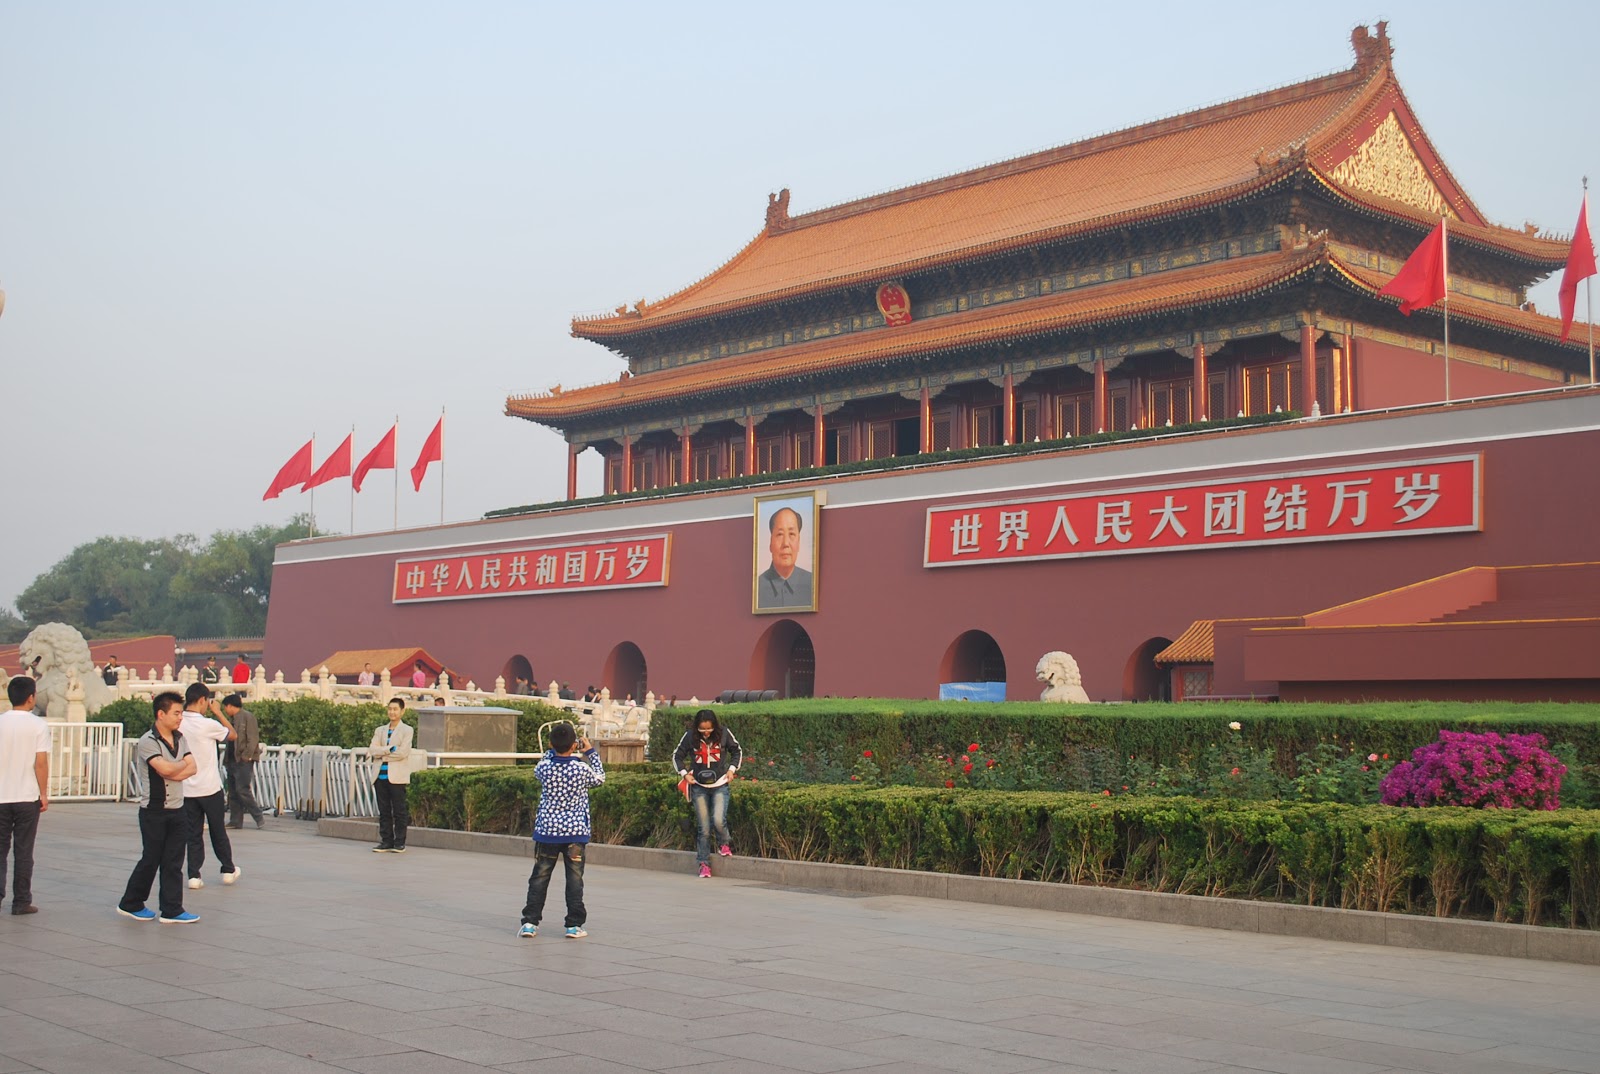 socalgalopenwallet: Tian An Men square